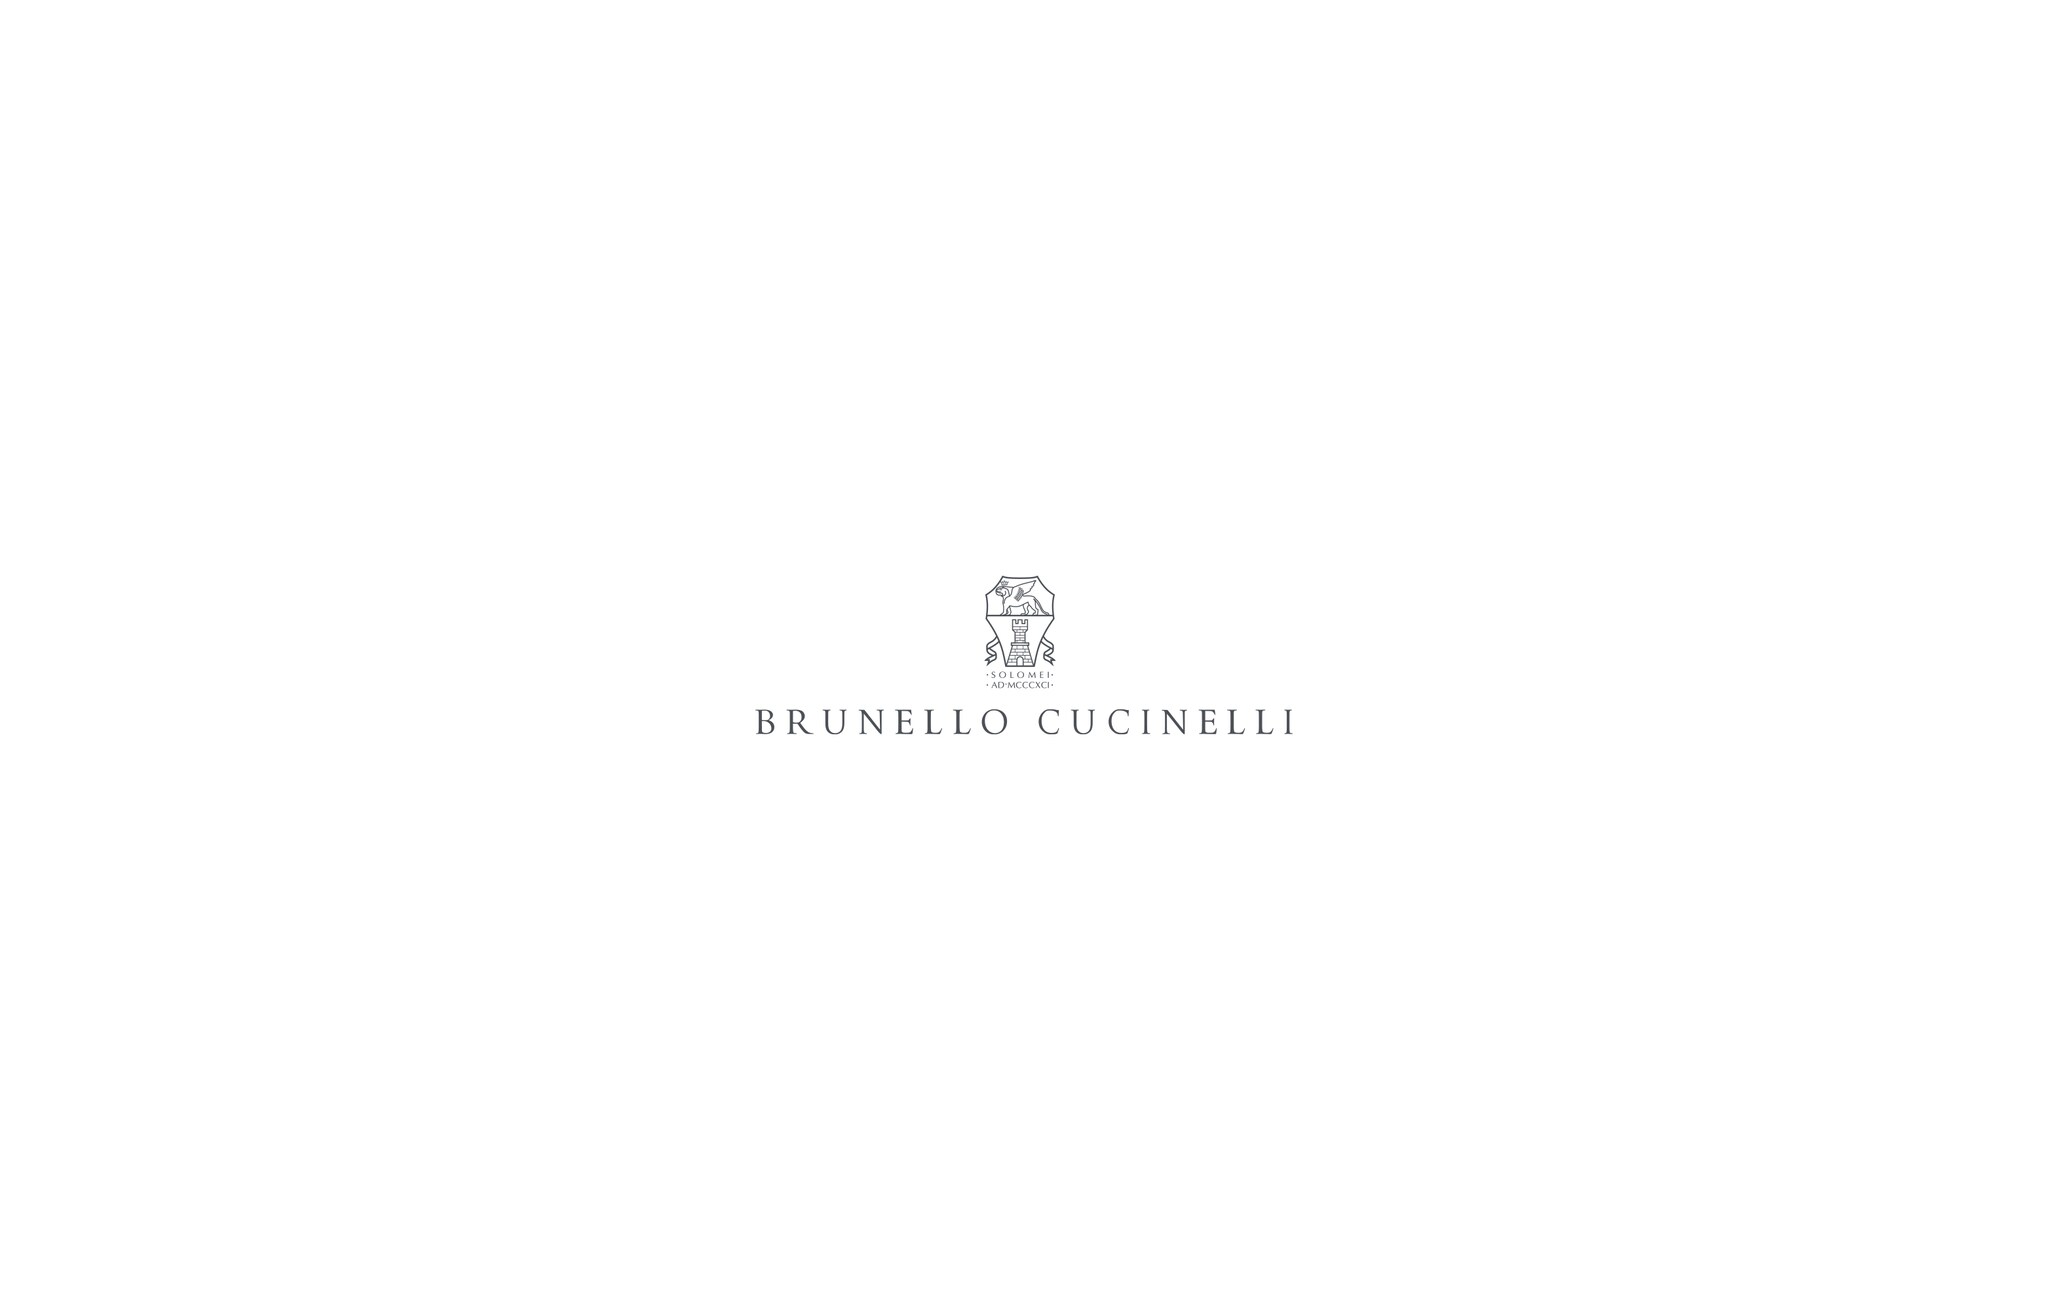  Dazzling cardigan Beige Woman - Brunello Cucinelli 